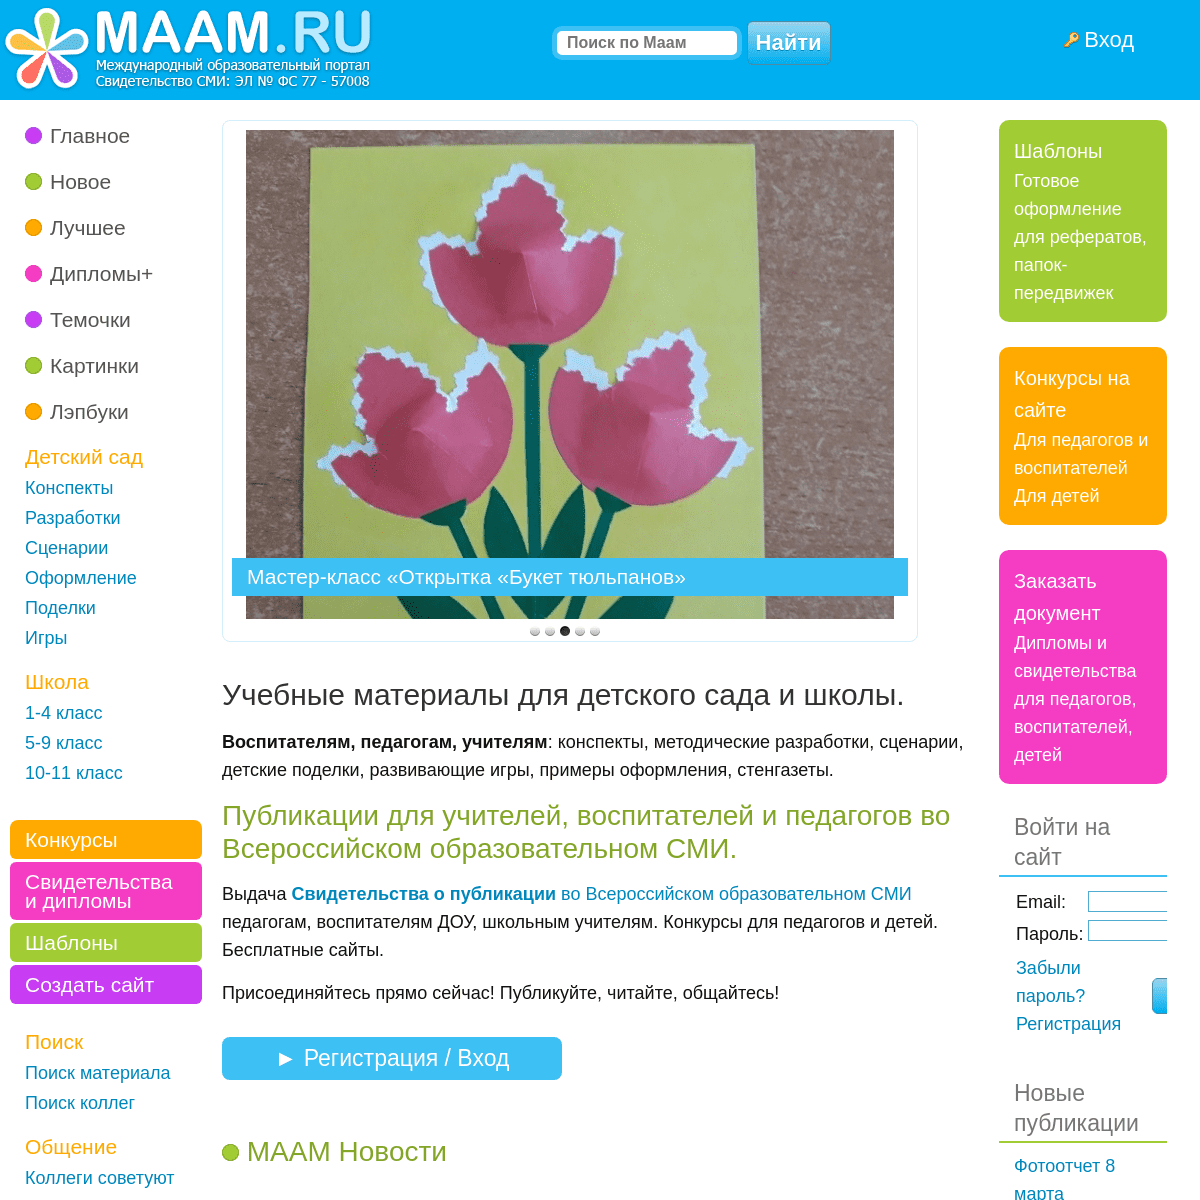 A complete backup of maam.ru